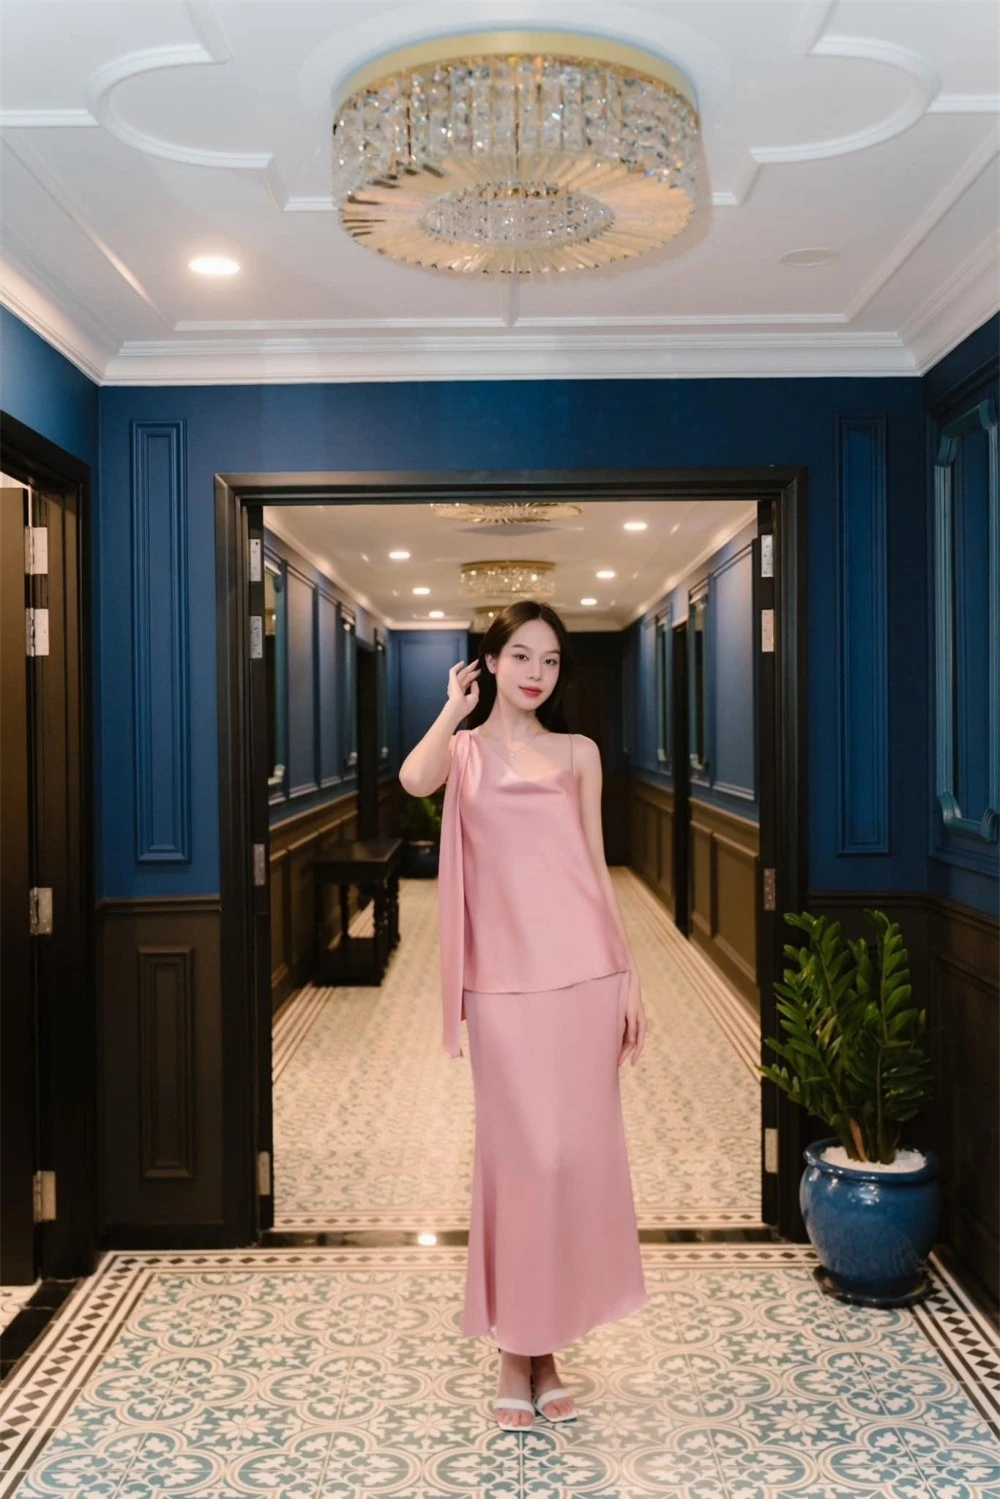 Đã tìm ra lý do Hoa hậu Thanh Thủy ngày càng chăm diện trang phục màu hồng ảnh 4